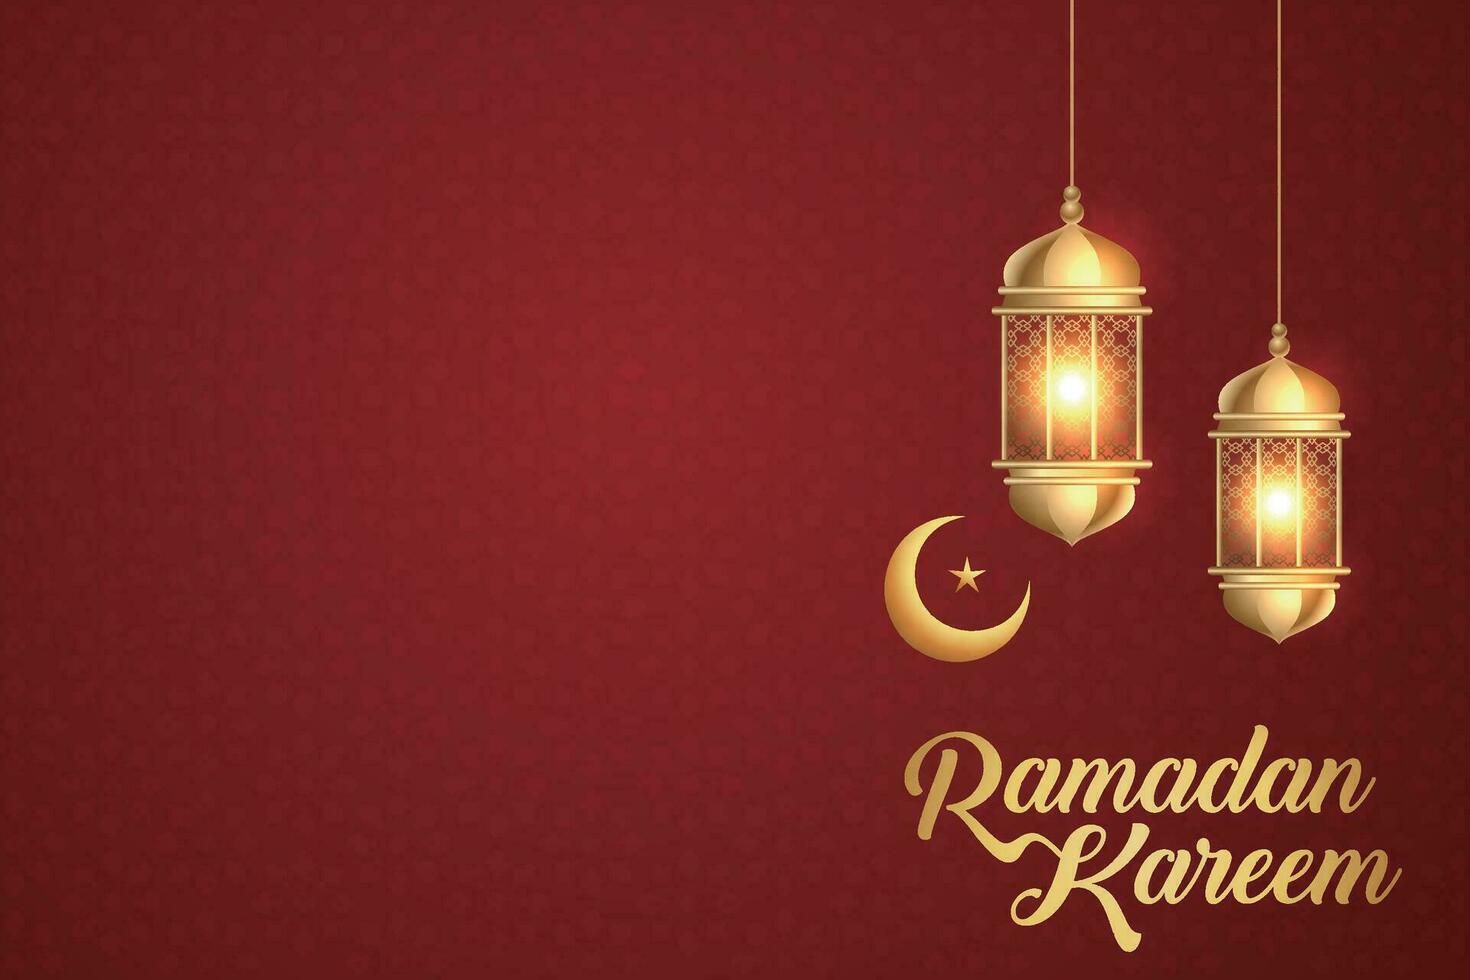 Ramadan kareem groet met lantaarns en halve maan vector